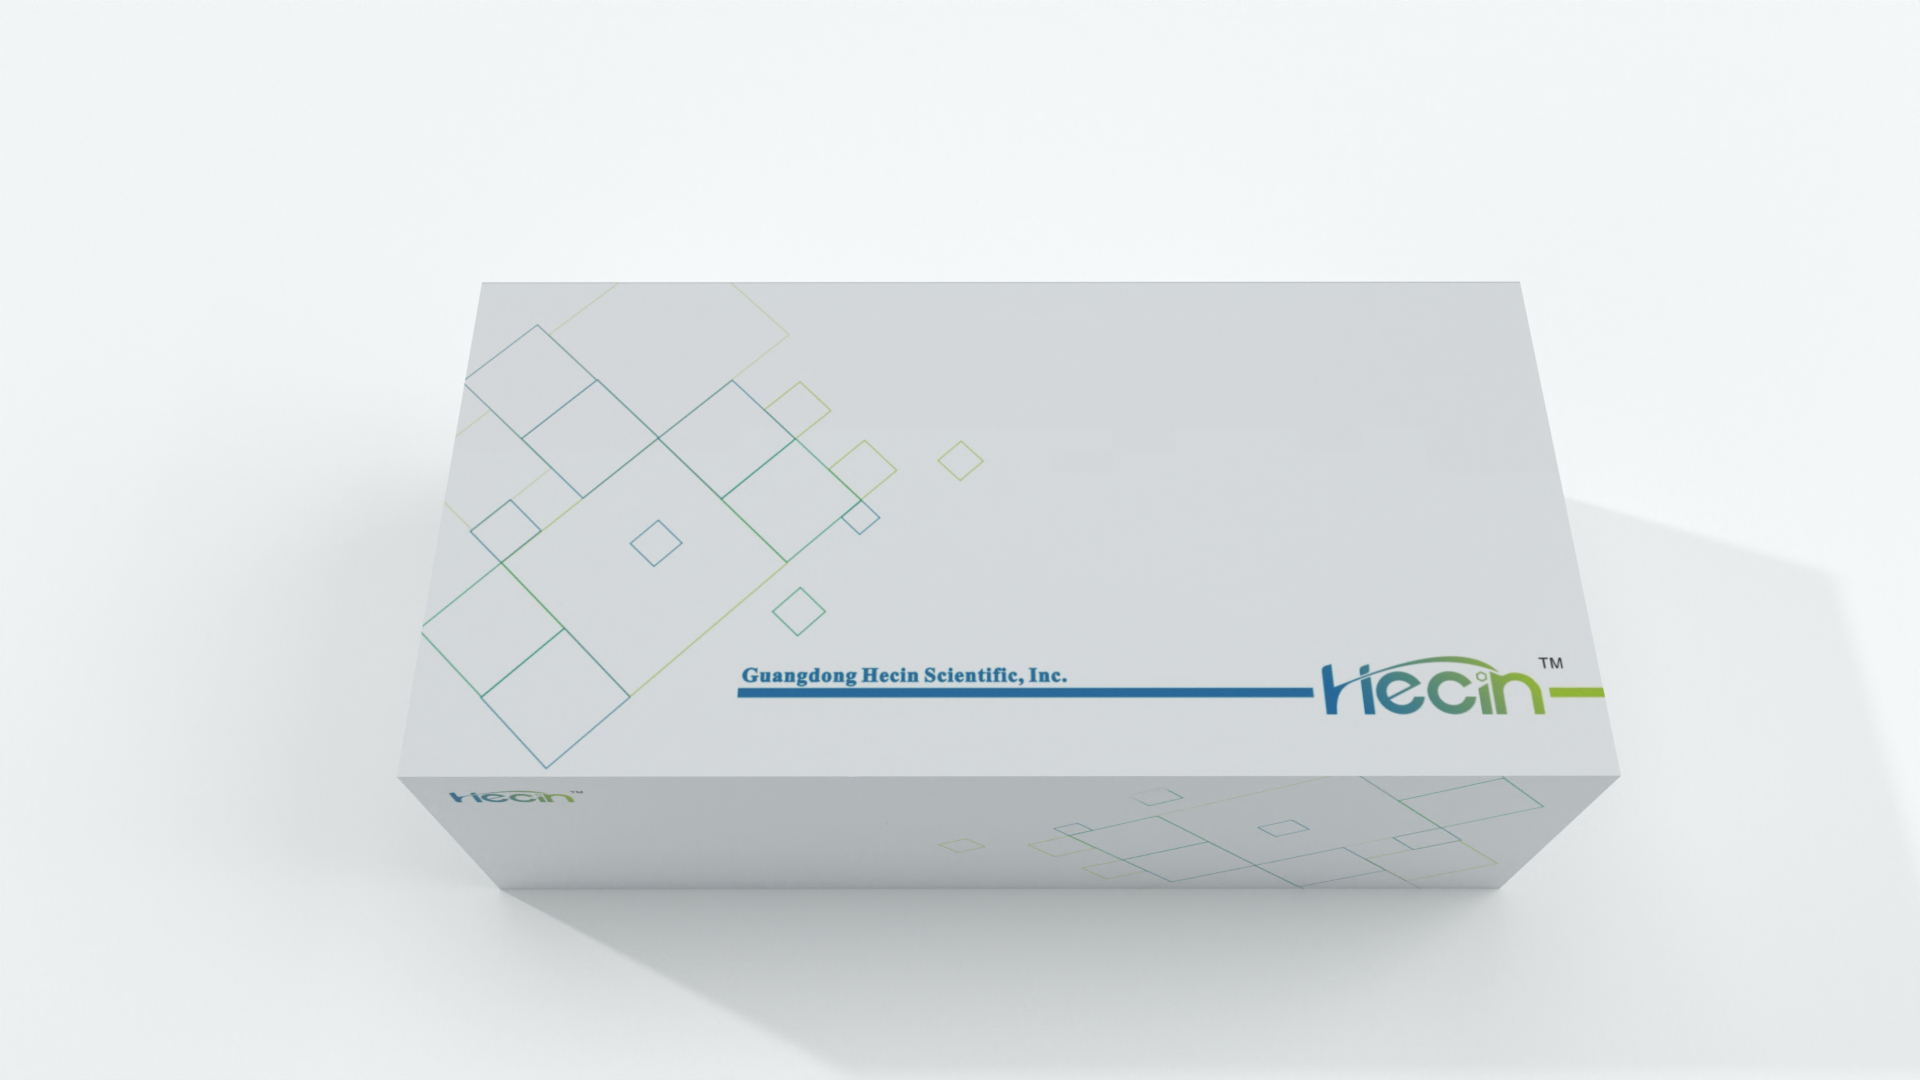 Hecin COVID-19 Professionelle Antigen-Schnelltests